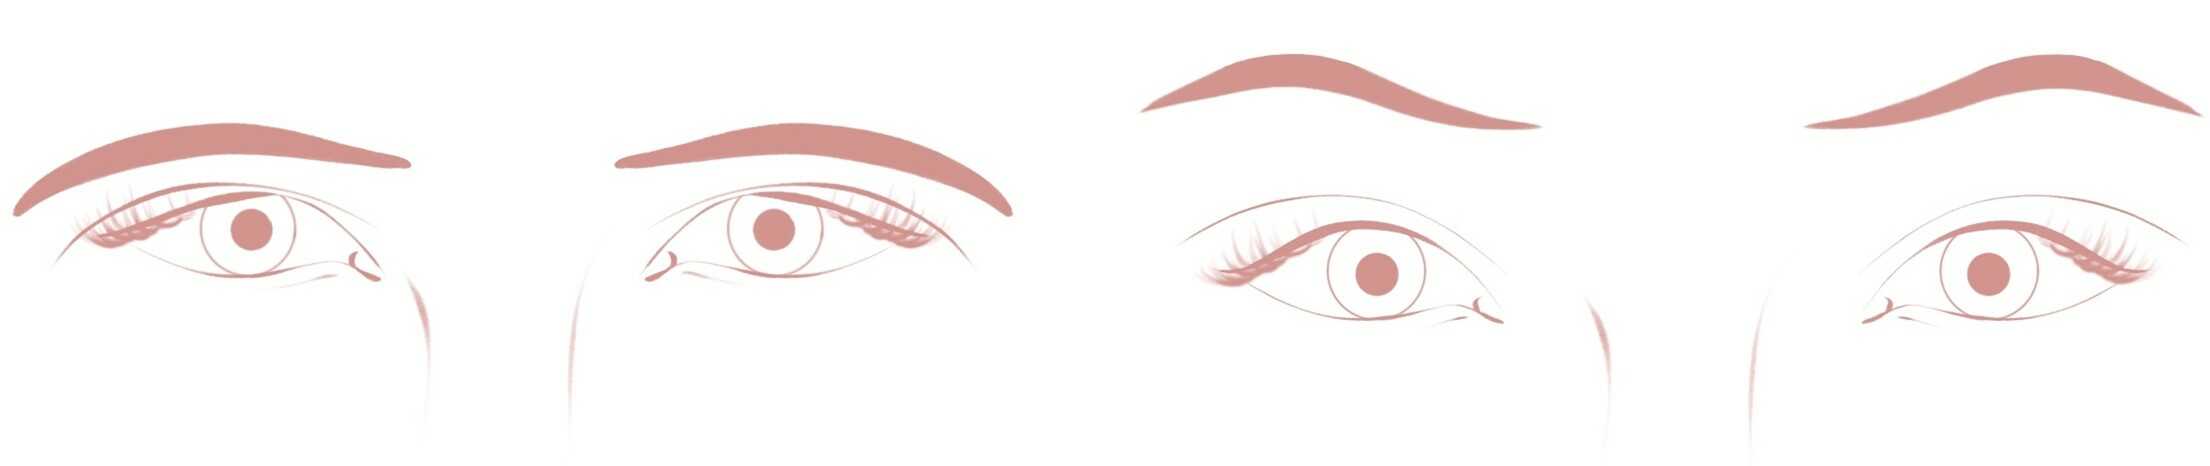 Vorher und Nachher eines operativen Augenbrauenliftings.